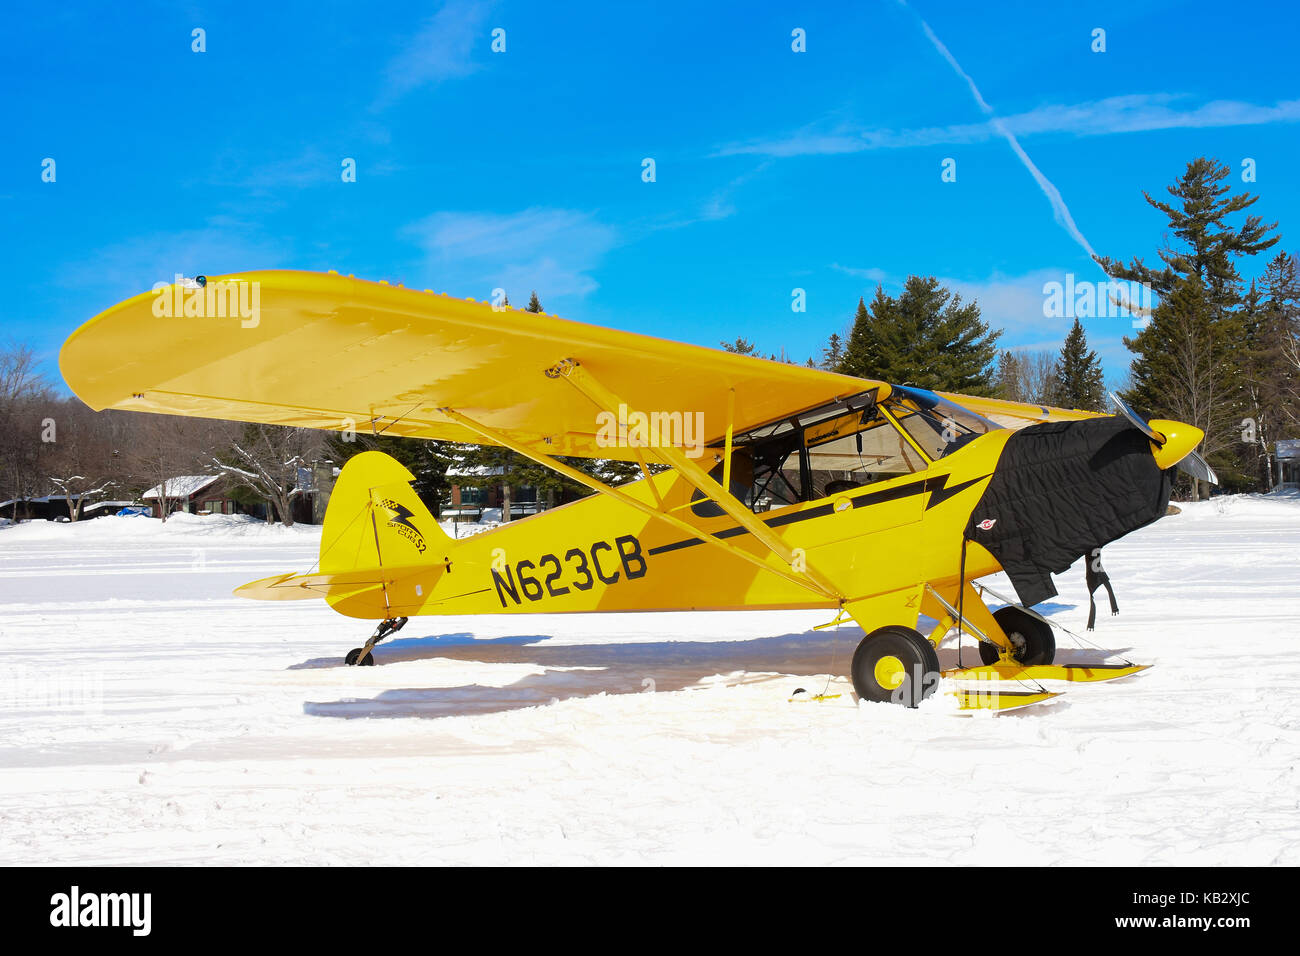 Sport Cub S2 Flugzeug auf Skiern geparkt auf dem Schnee auf See angenehm in der Adirondack Park. Stockfoto